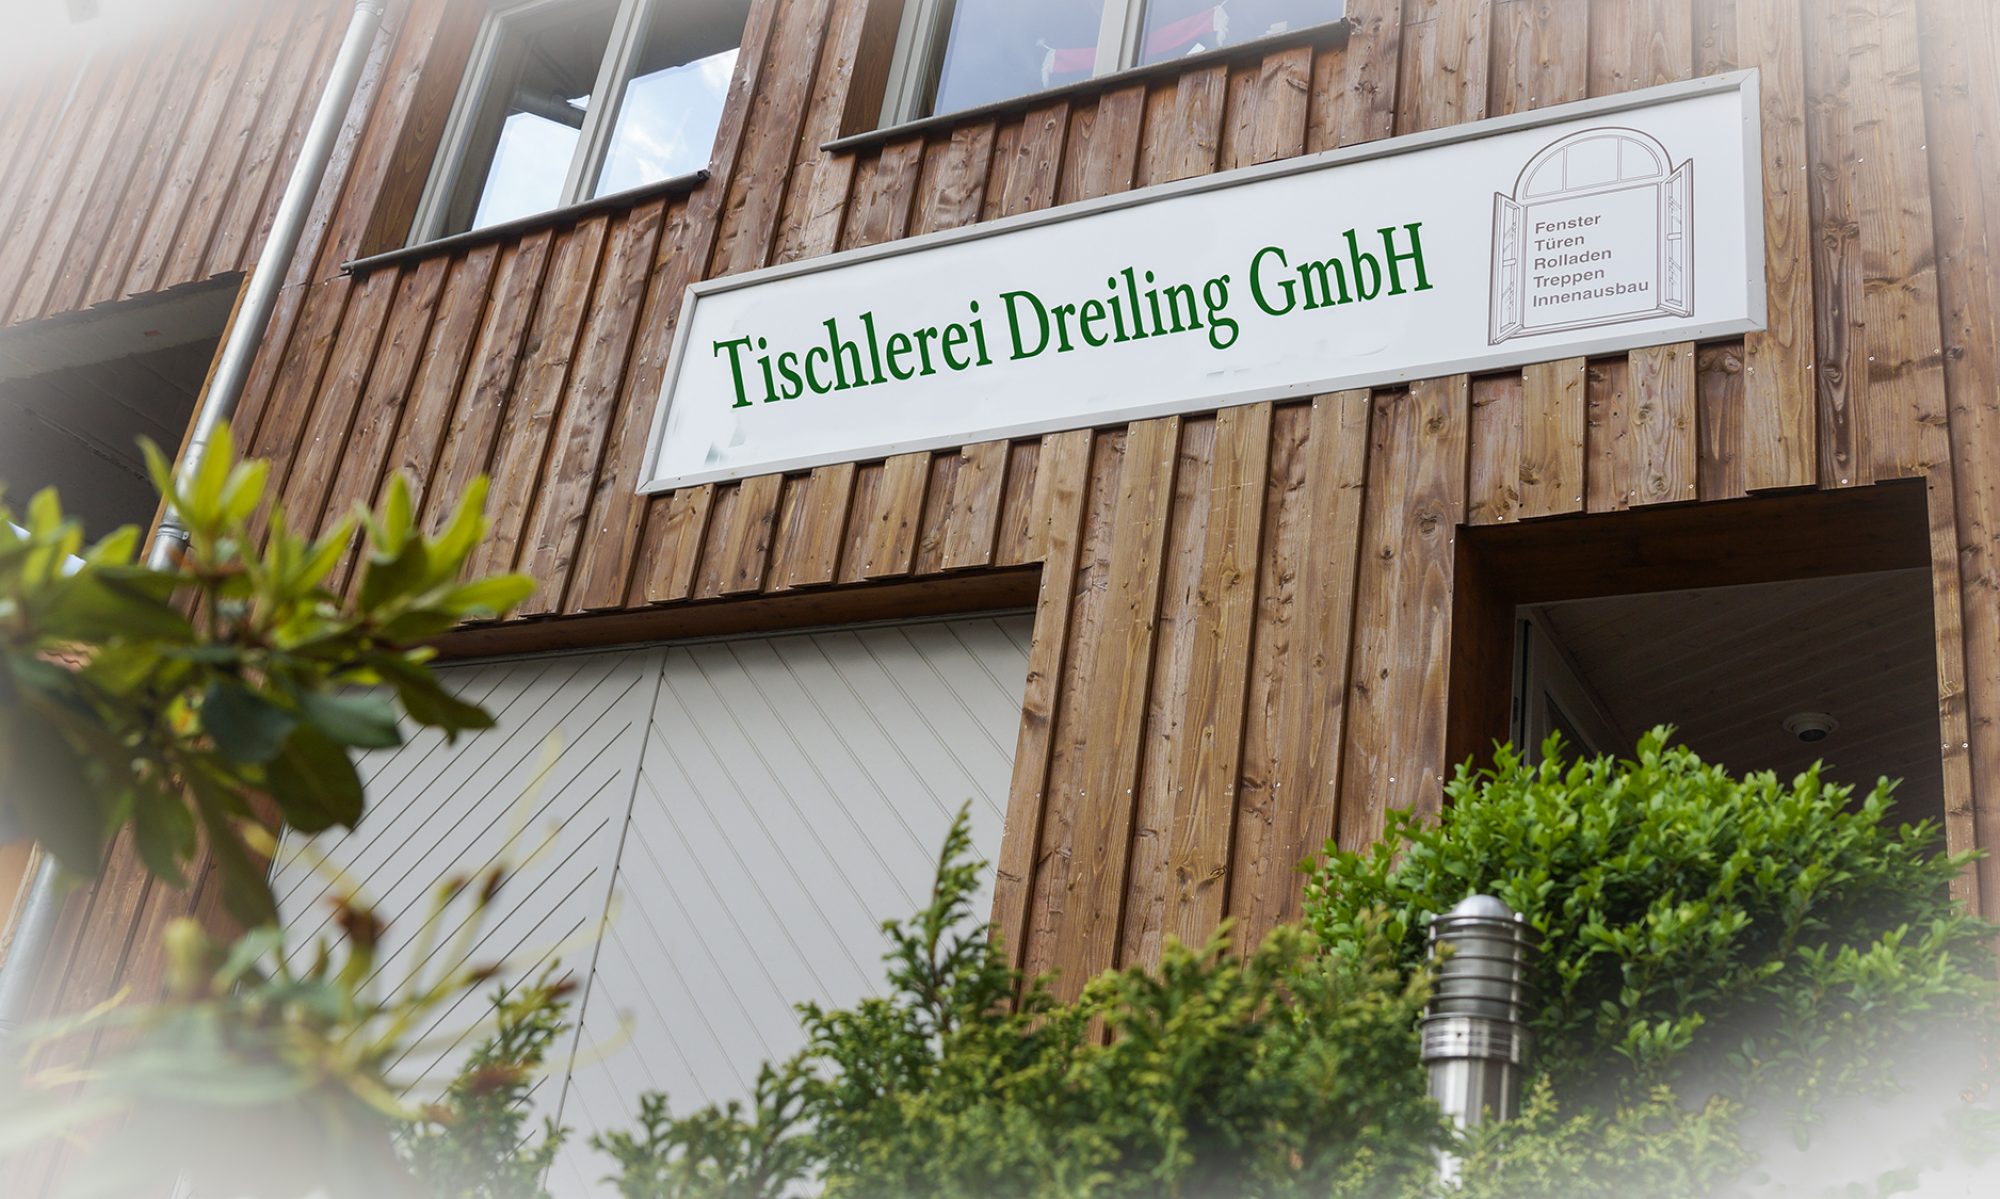 Tischlerei Dreiling GmbH